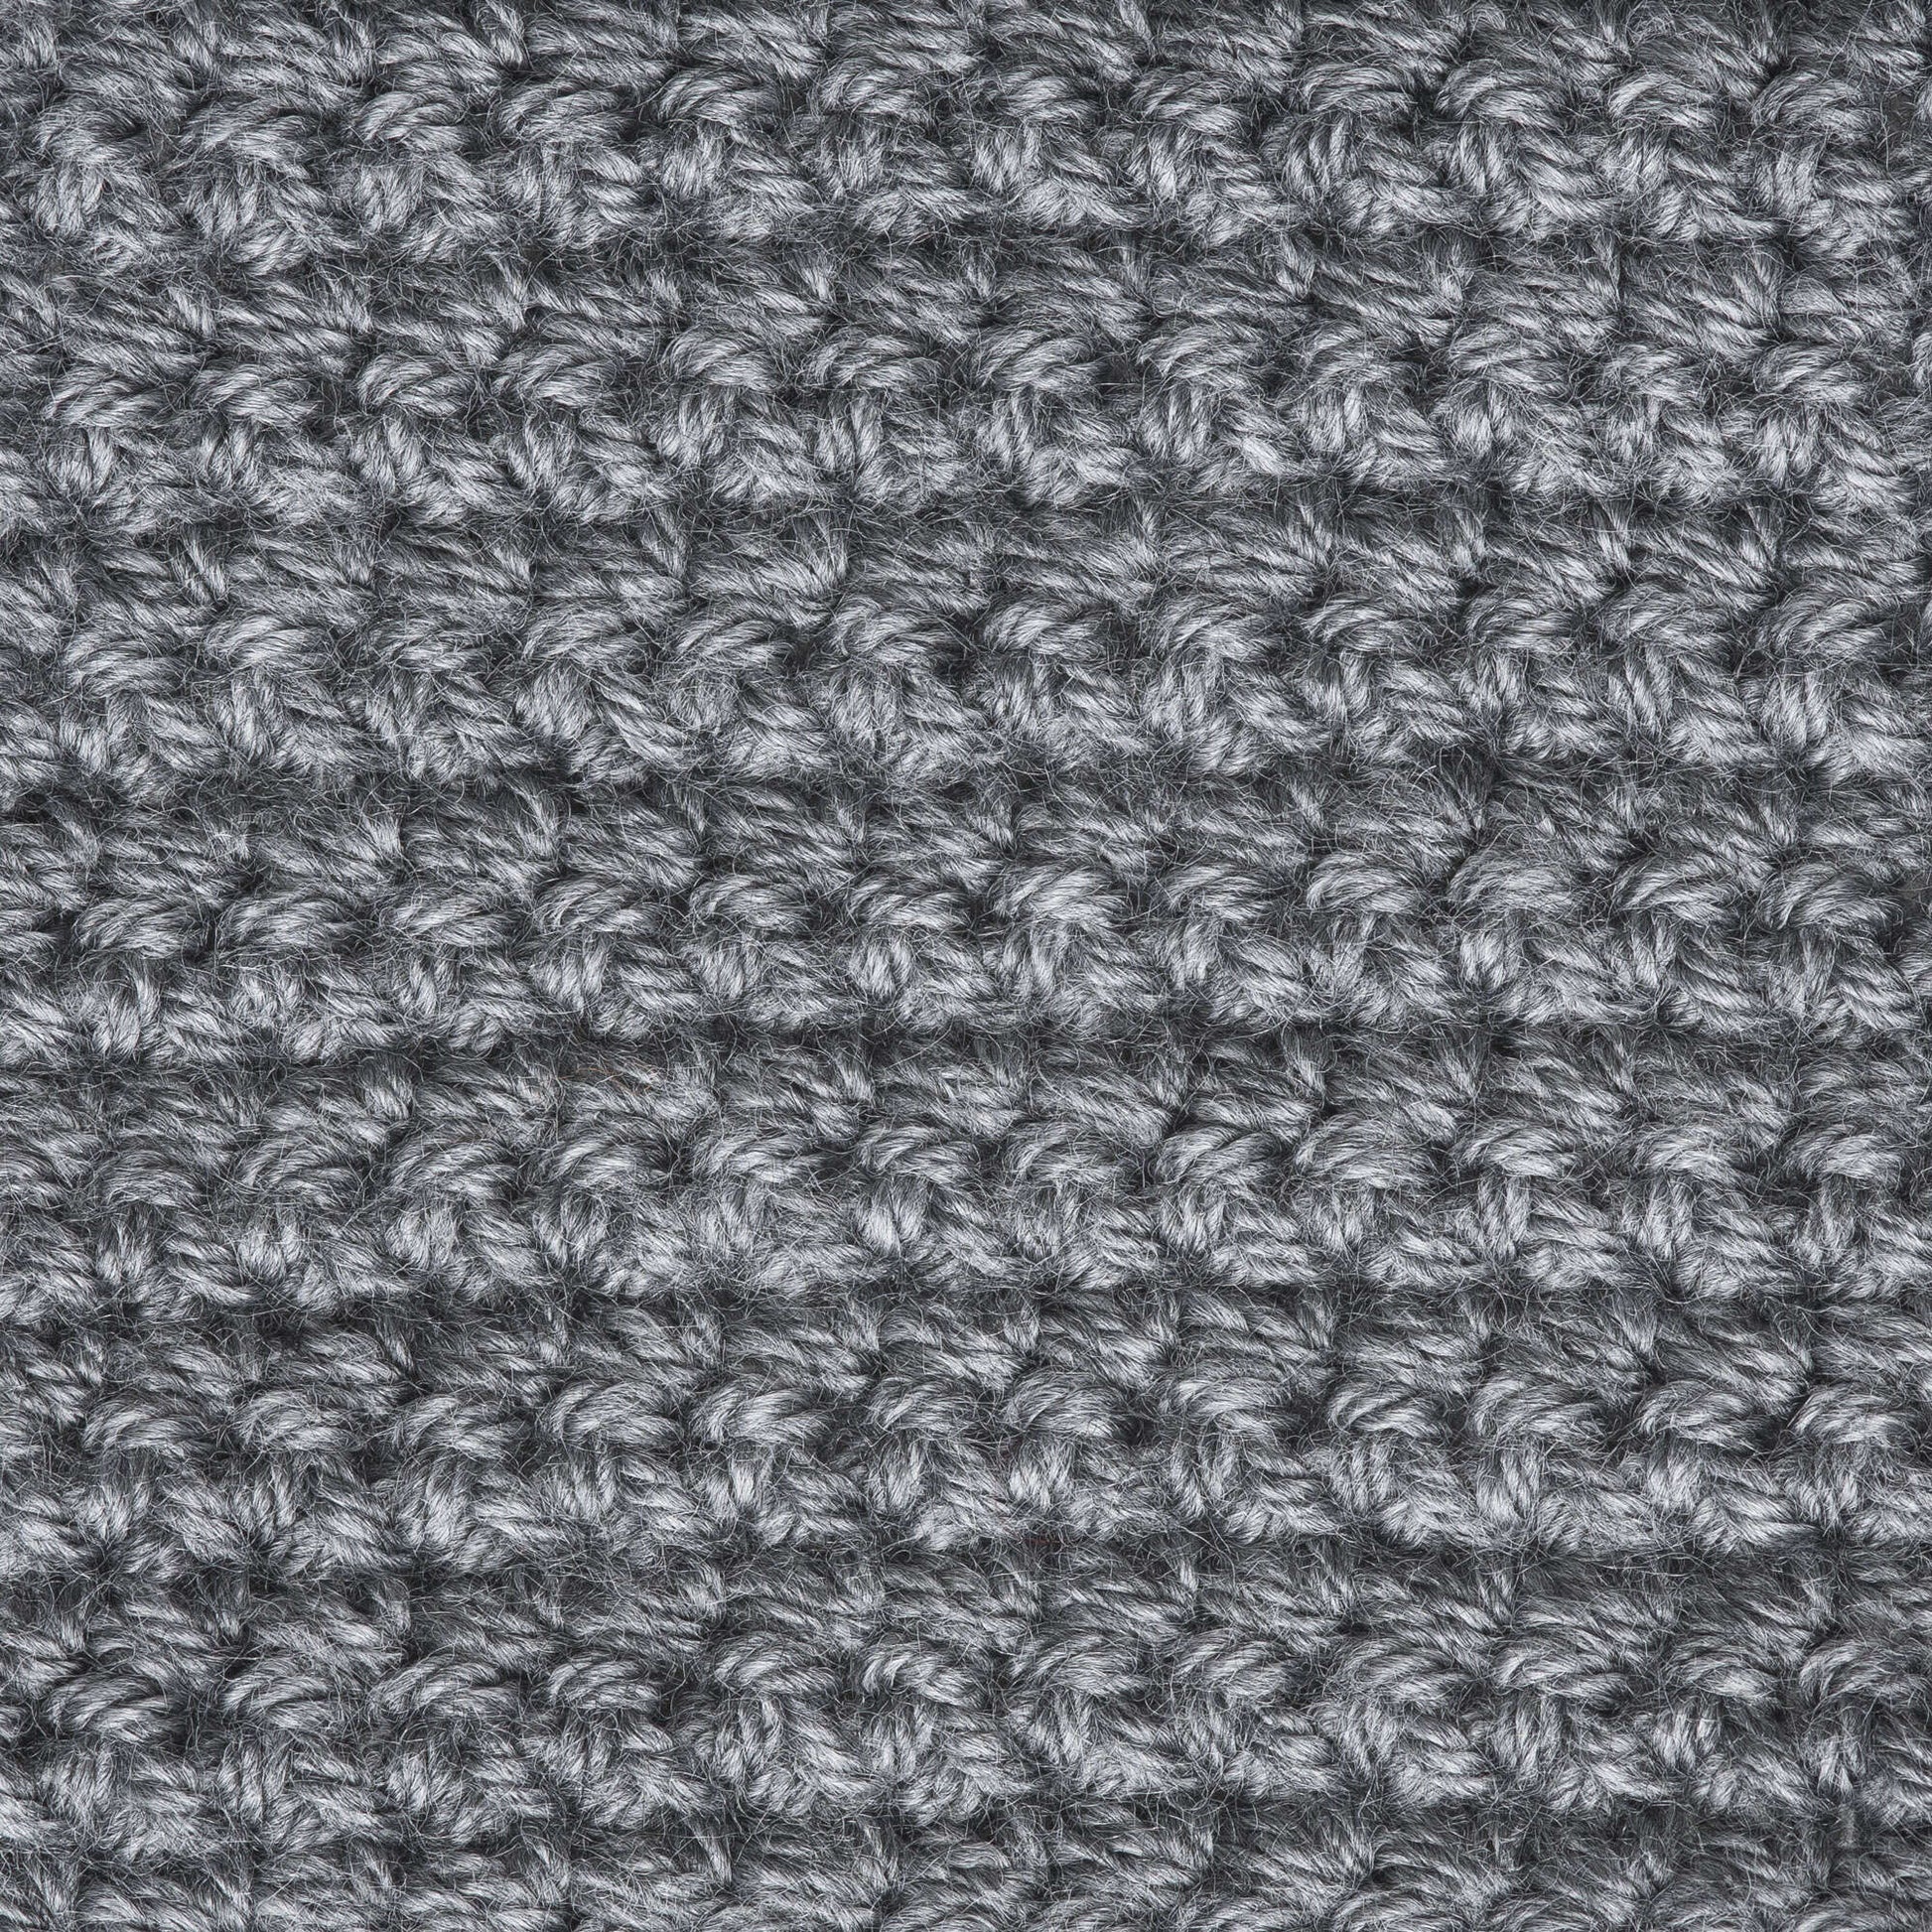 Patons Canadiana Yarn Medium Gray Mix